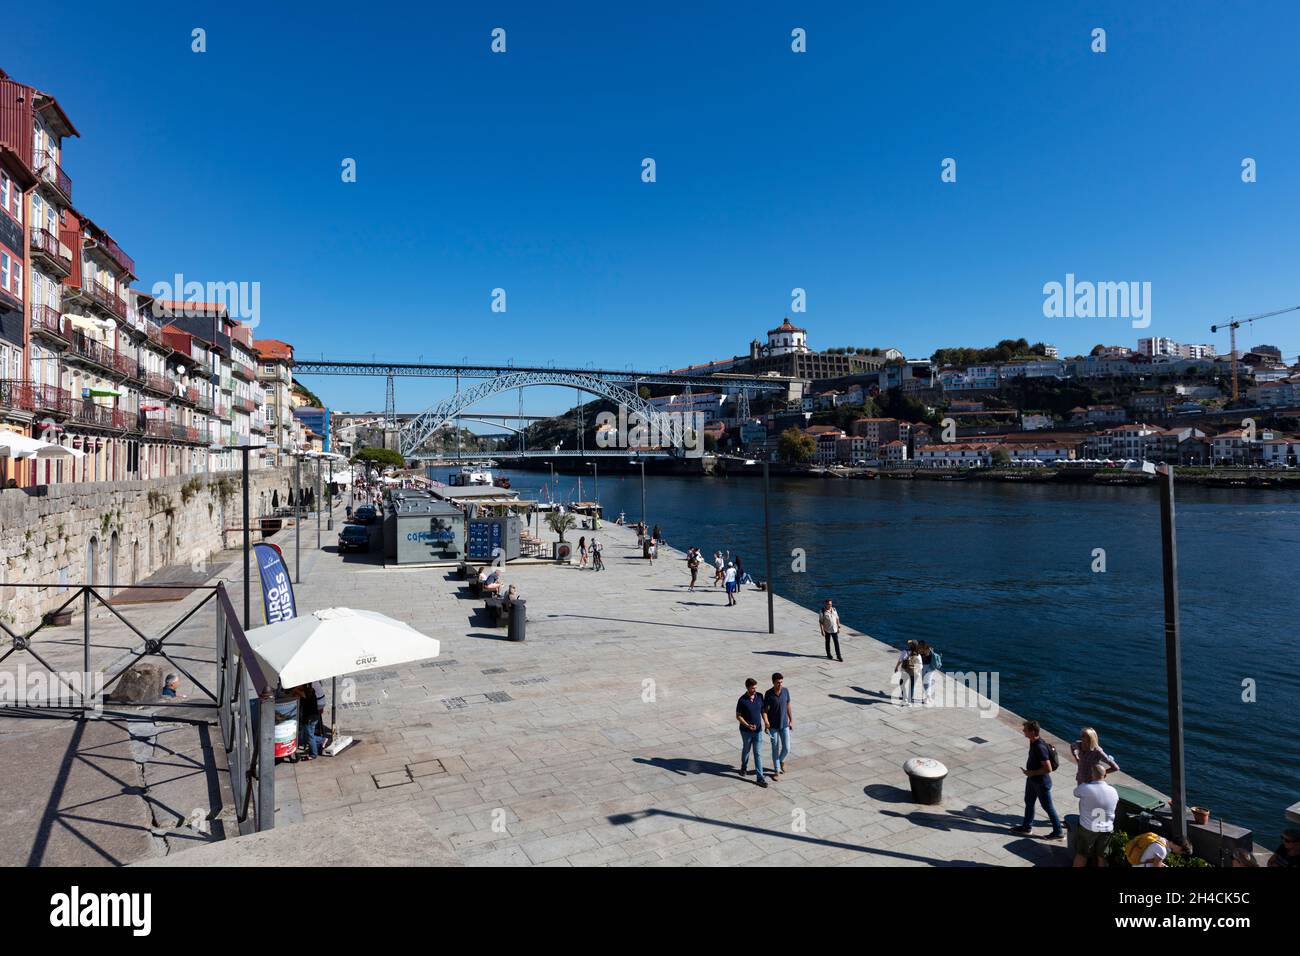 Fußgängerpromenade entlang des Douro in der Altstadt von Porto. Im Hintergrund ist die Brücke Pond Luis I zu sehen. Menschen flanieren, sind nicht zu . Stock Photo